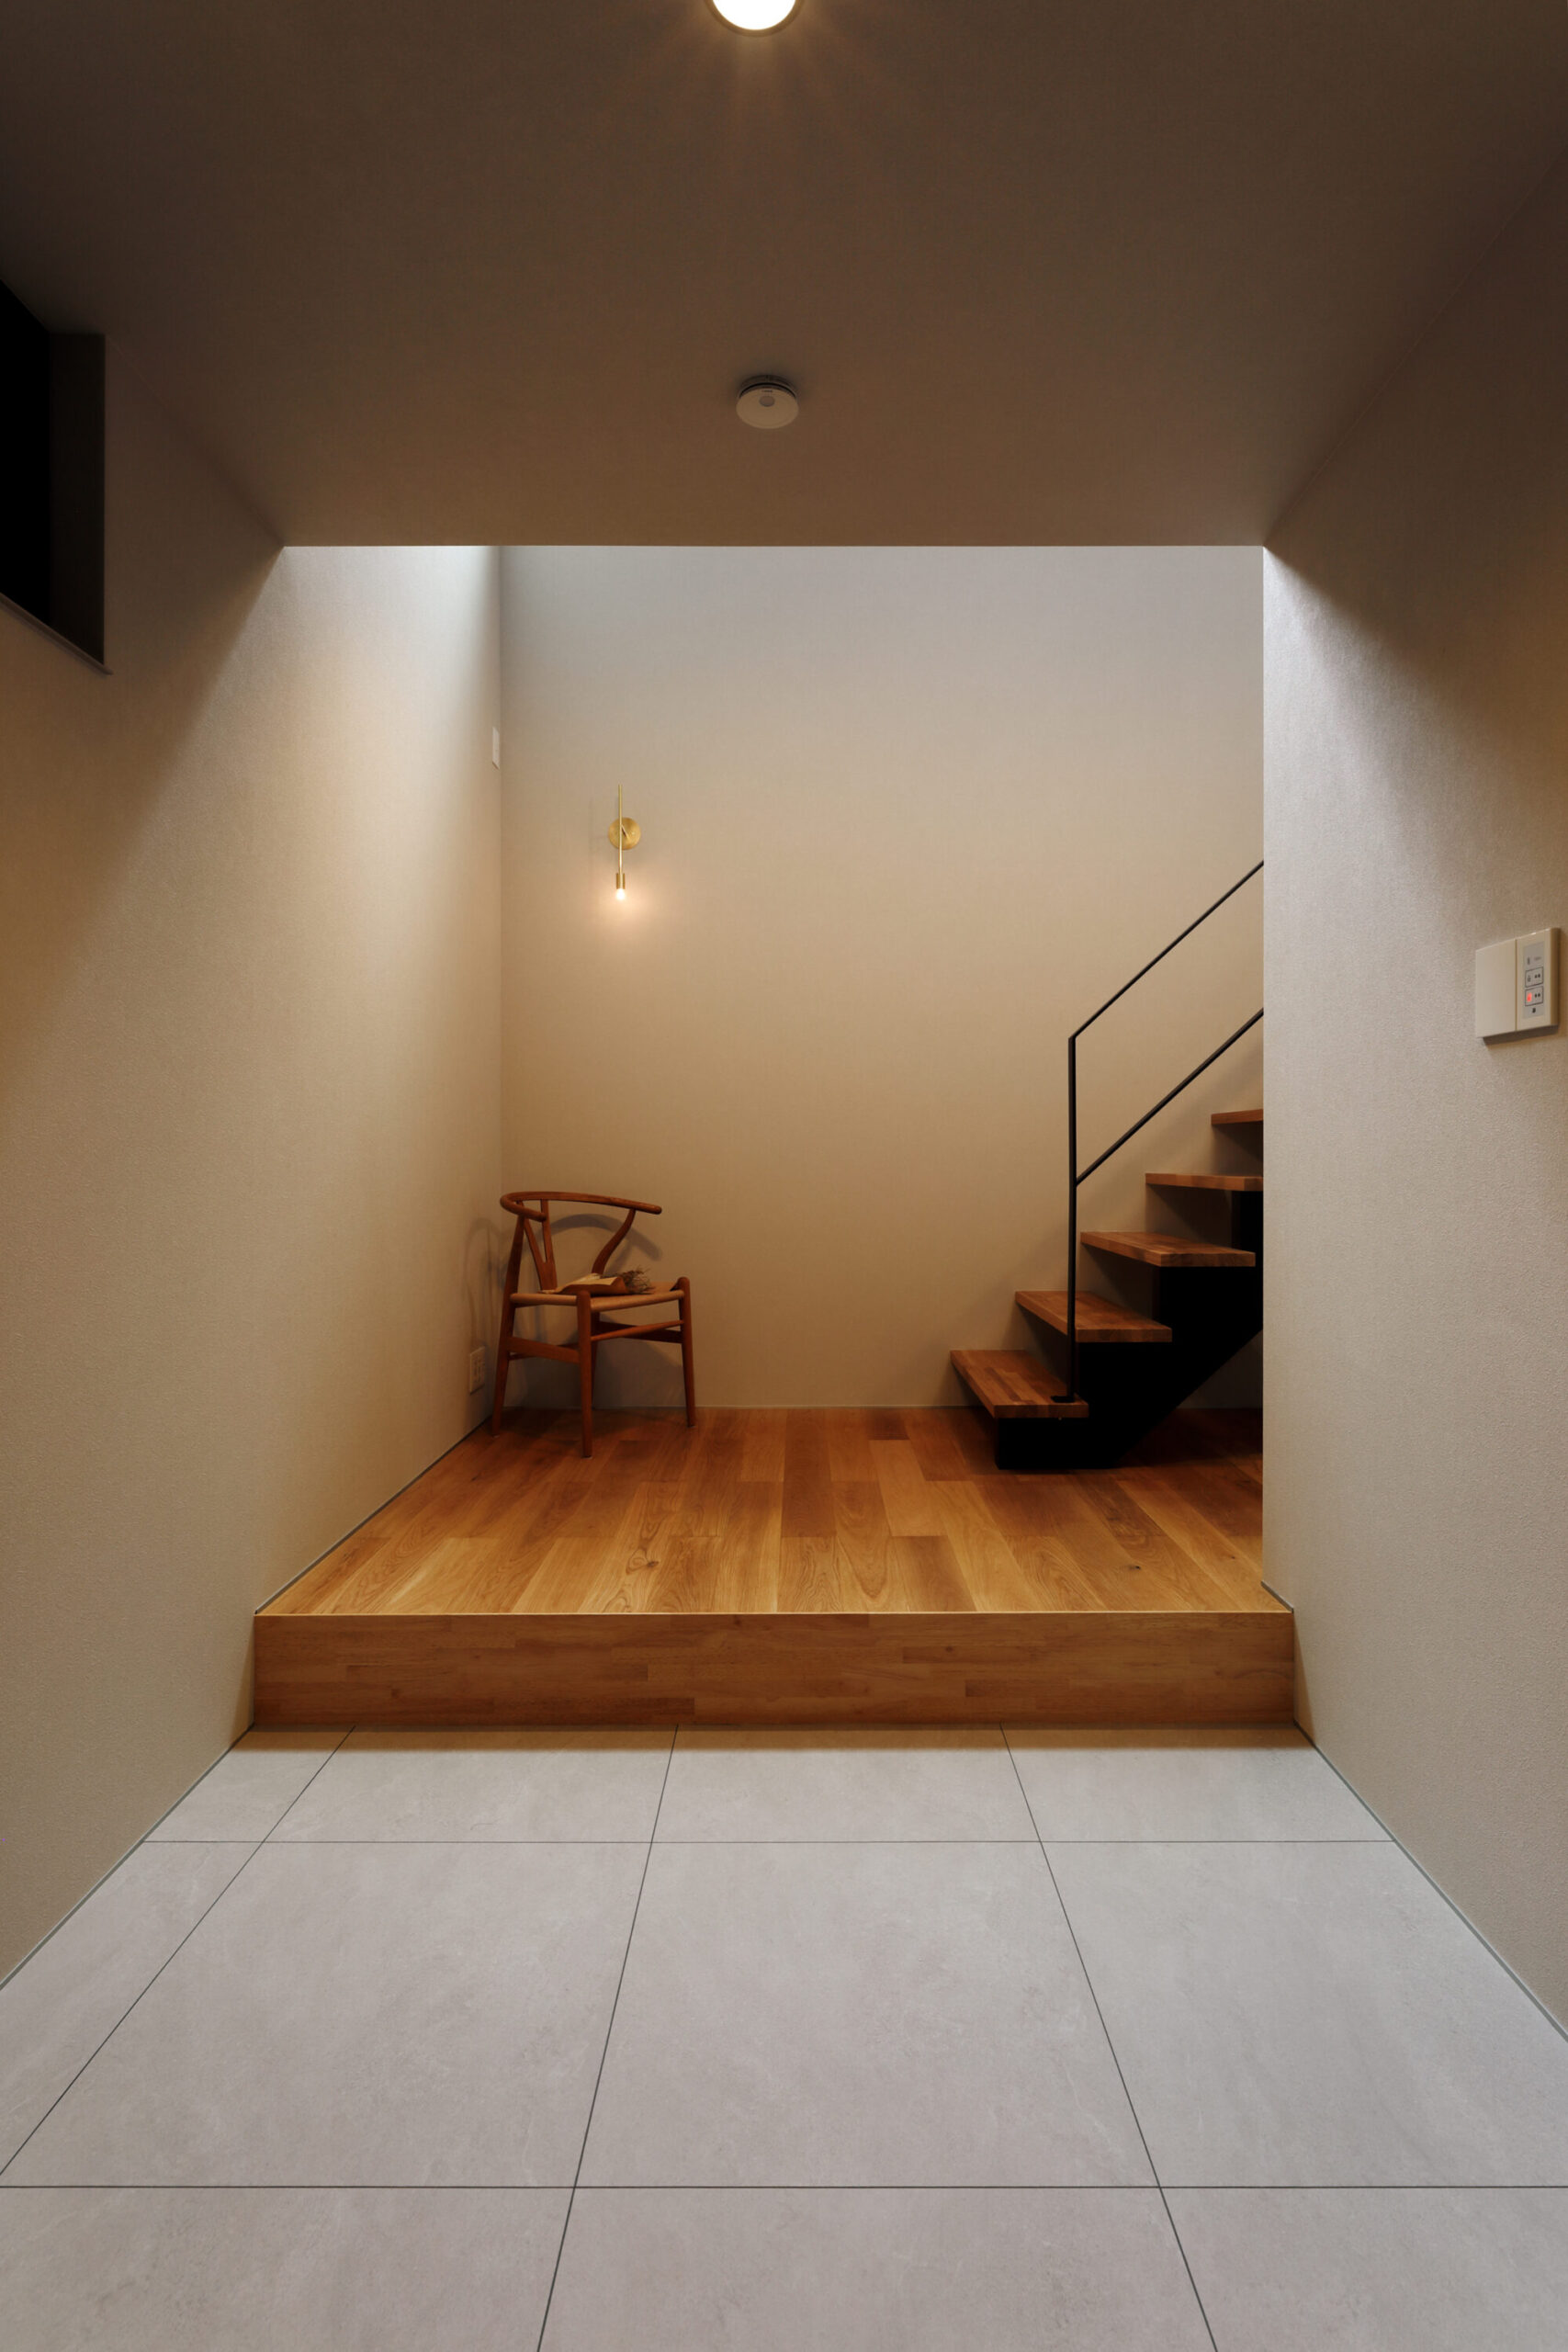 【予約制見学会】京都市の住宅街に建つ17坪の狭小間取りの家